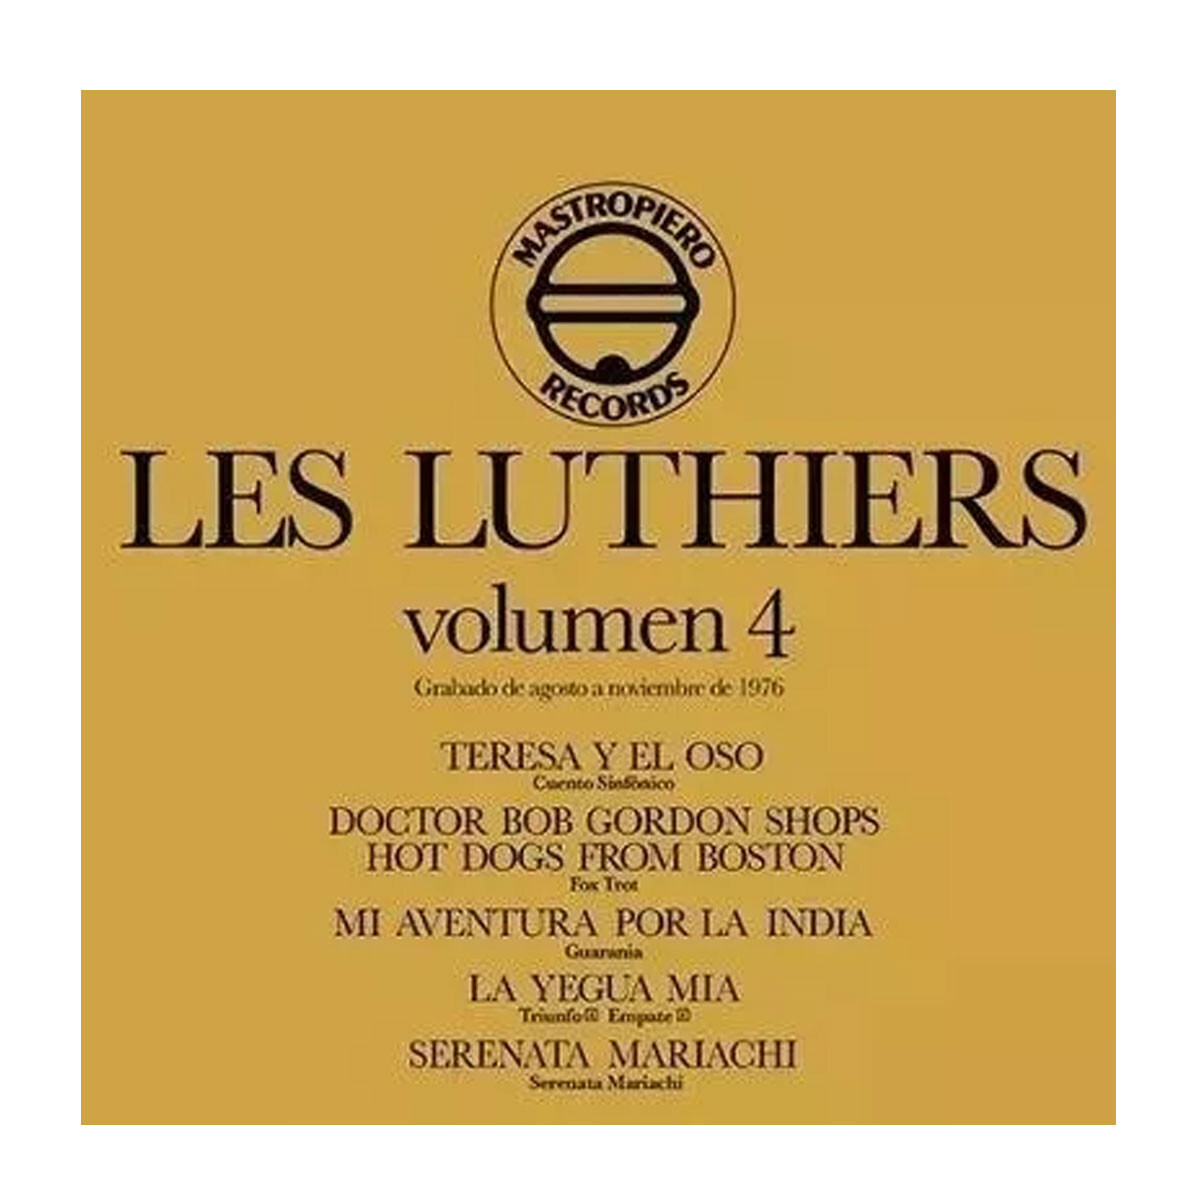 Les Luthiers- Les Luthiers Volumen 4 - Vinilo 